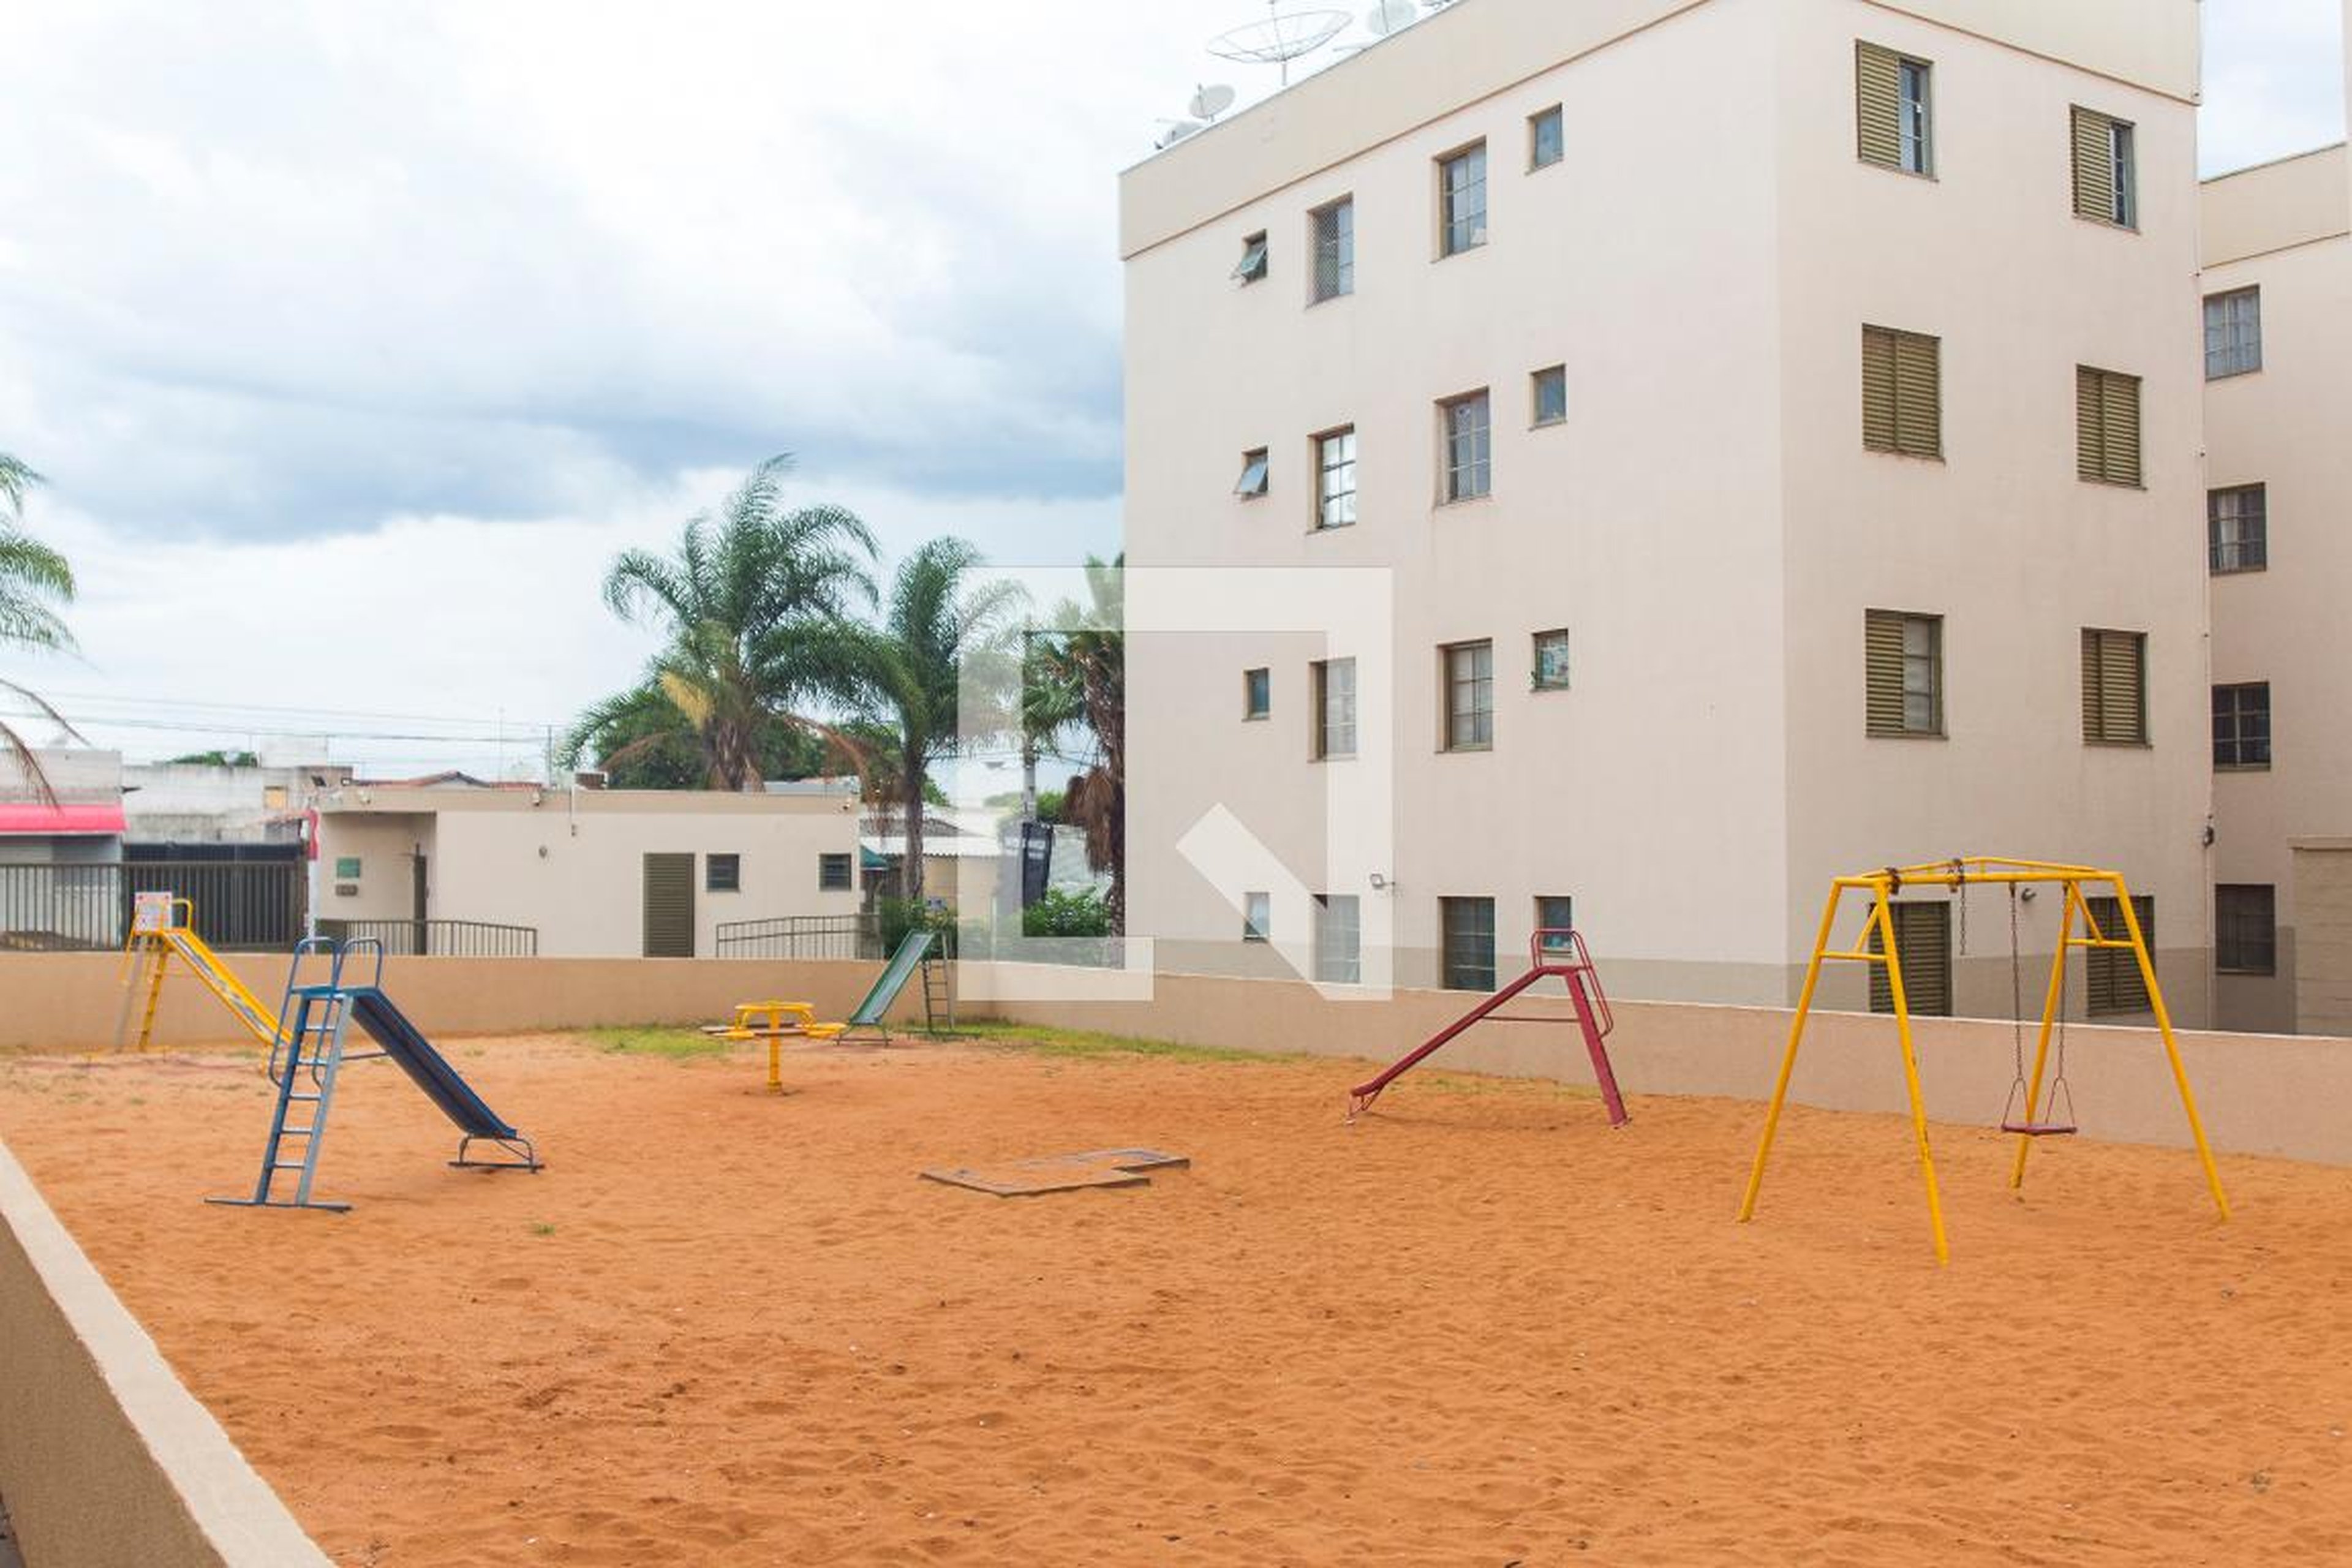 Área Comum - Playground - Residencial São Jorge